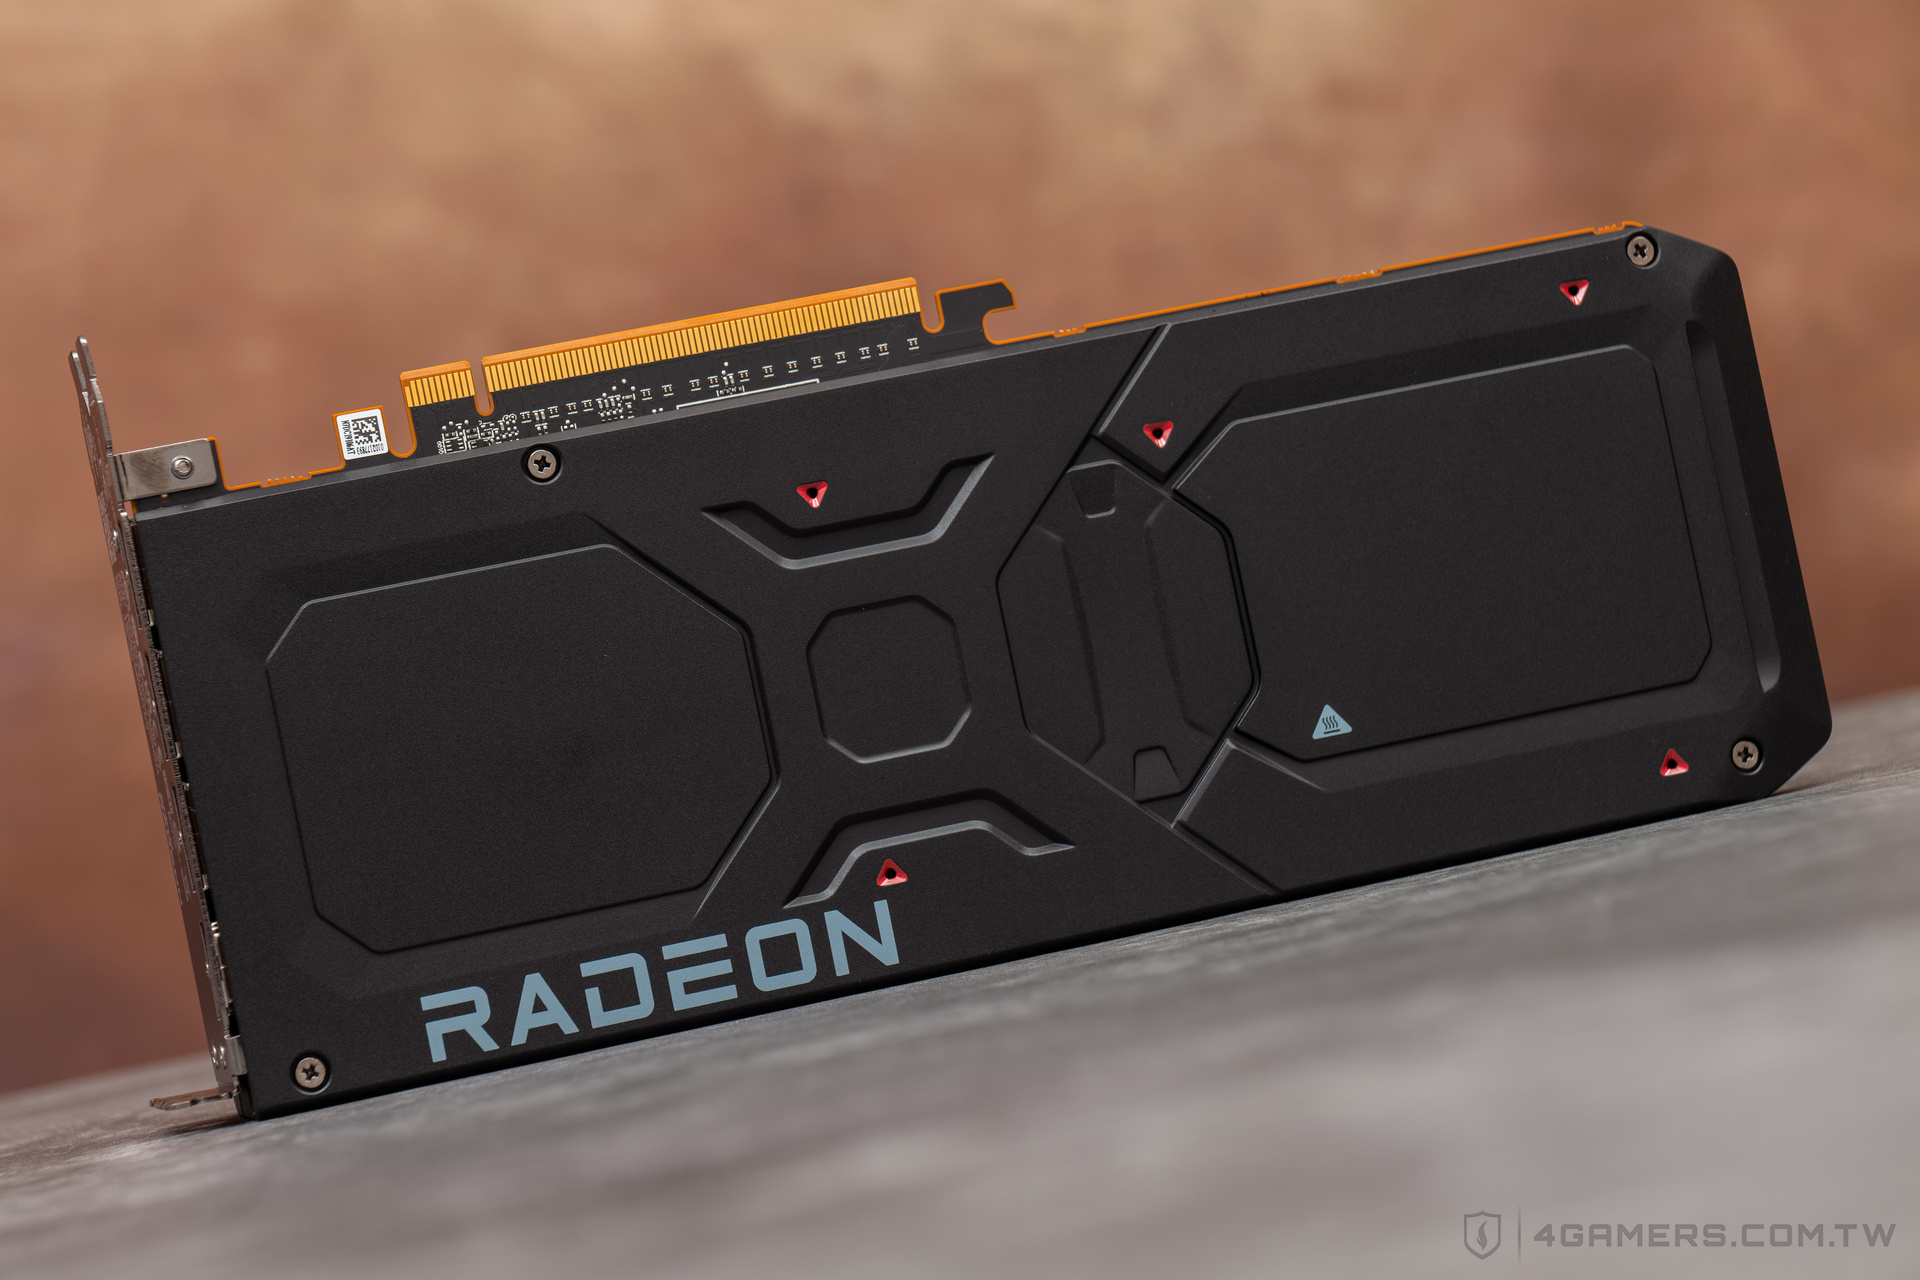 AMD Radeon RX 7800 XT